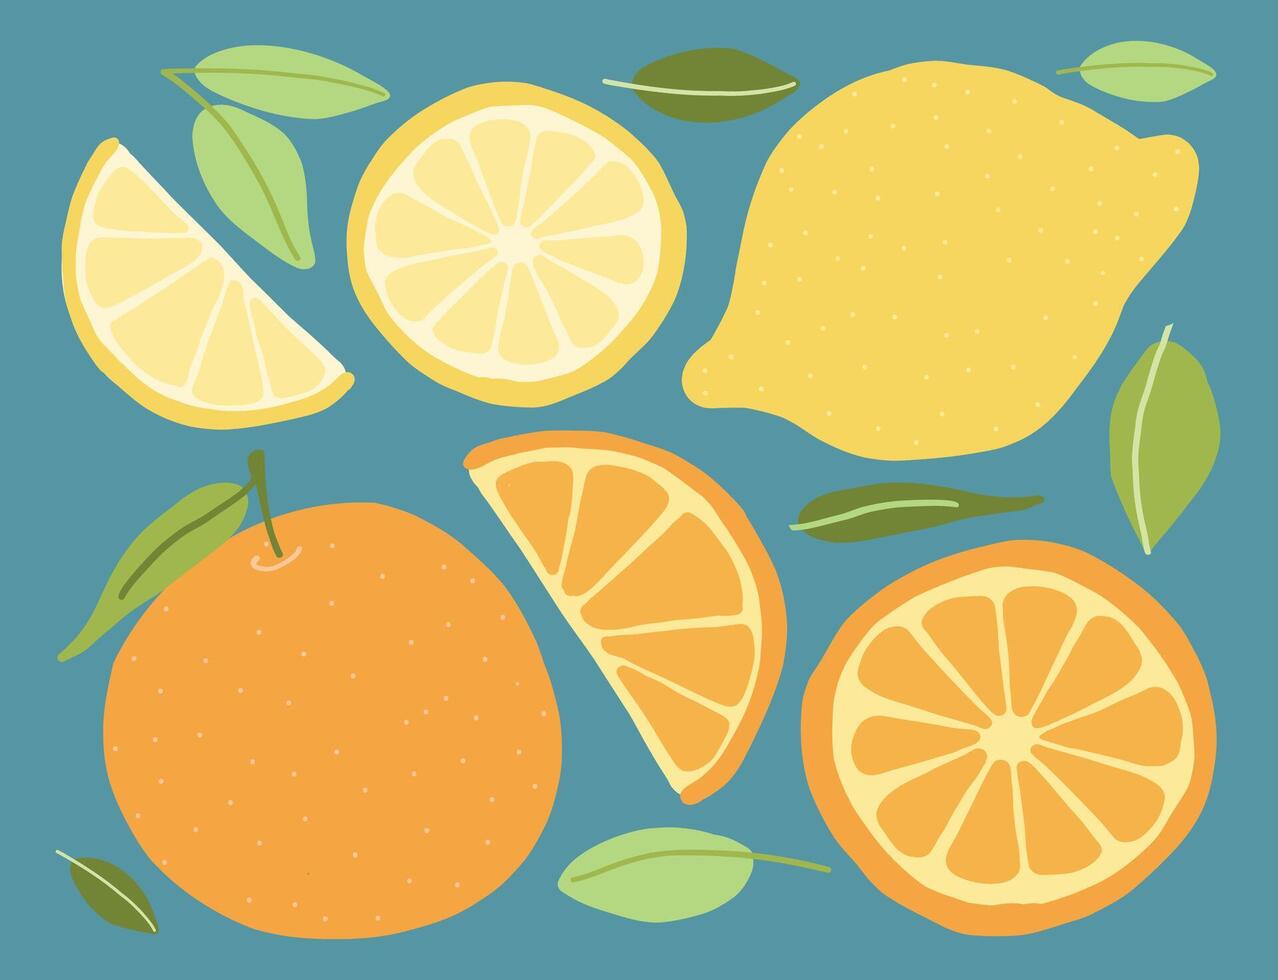 färgrik citrus- frukt och blad illustrationer på blå, terar hela och skivad apelsiner och citroner i en rena, platt design. vektor